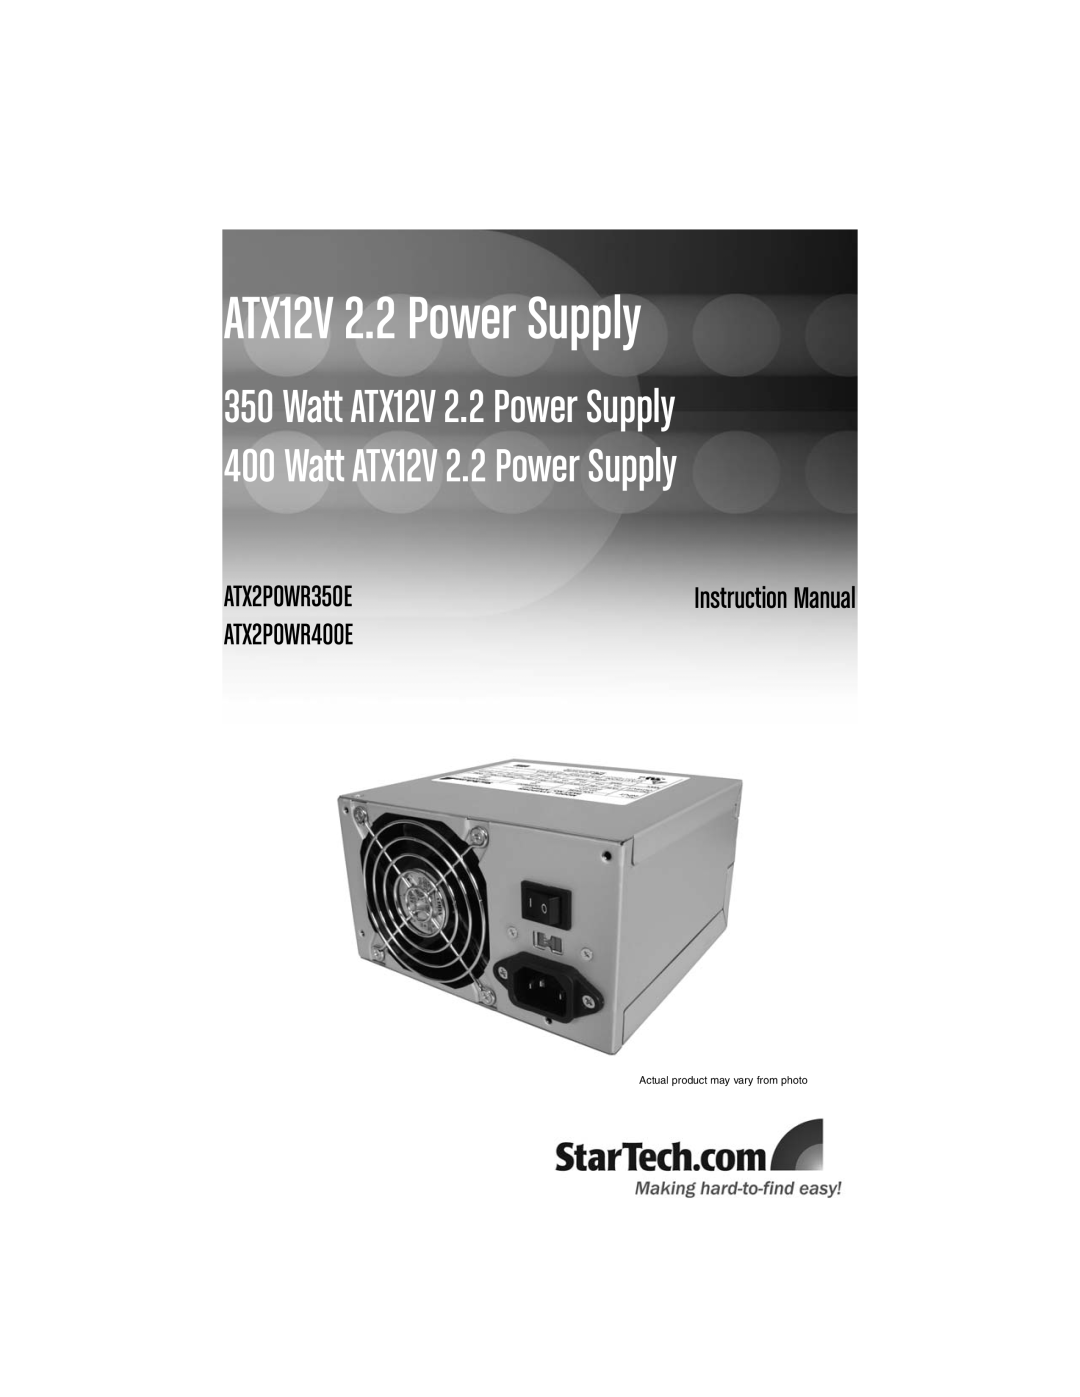 StarTech.com ATX12V2.2 instruction manual ATX12V 2.2 Power Supply, ATX2POWR350E, ATX2POWR400E 